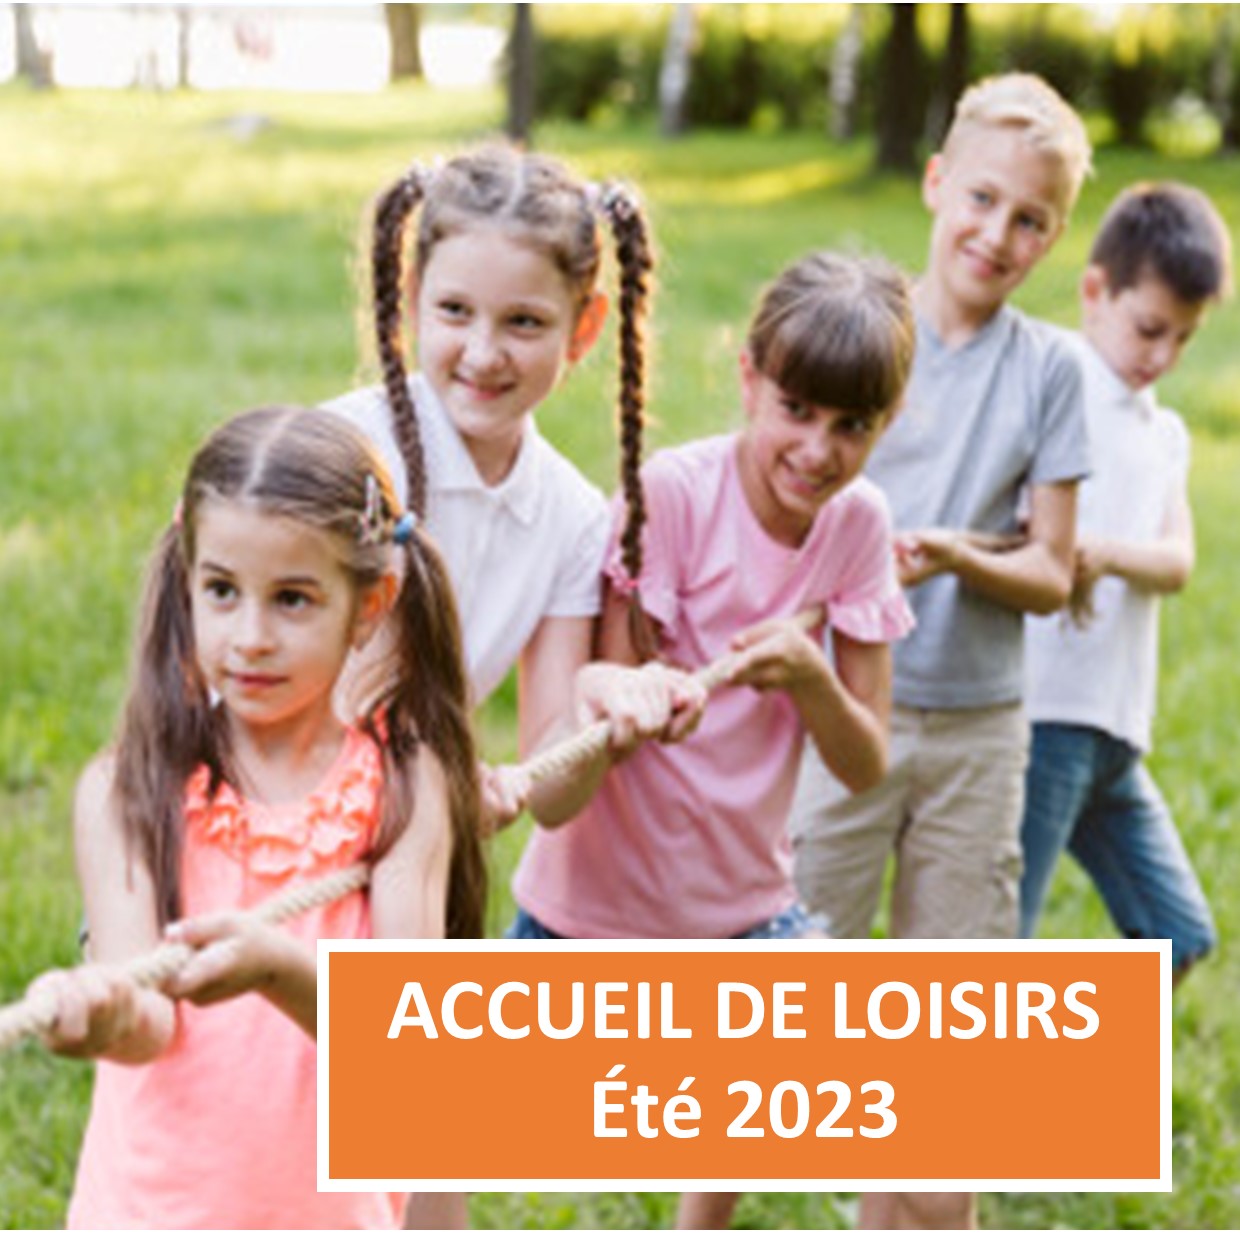 Accueil de loisirs - Été 2023 - Communauté de communes Rives de Saône